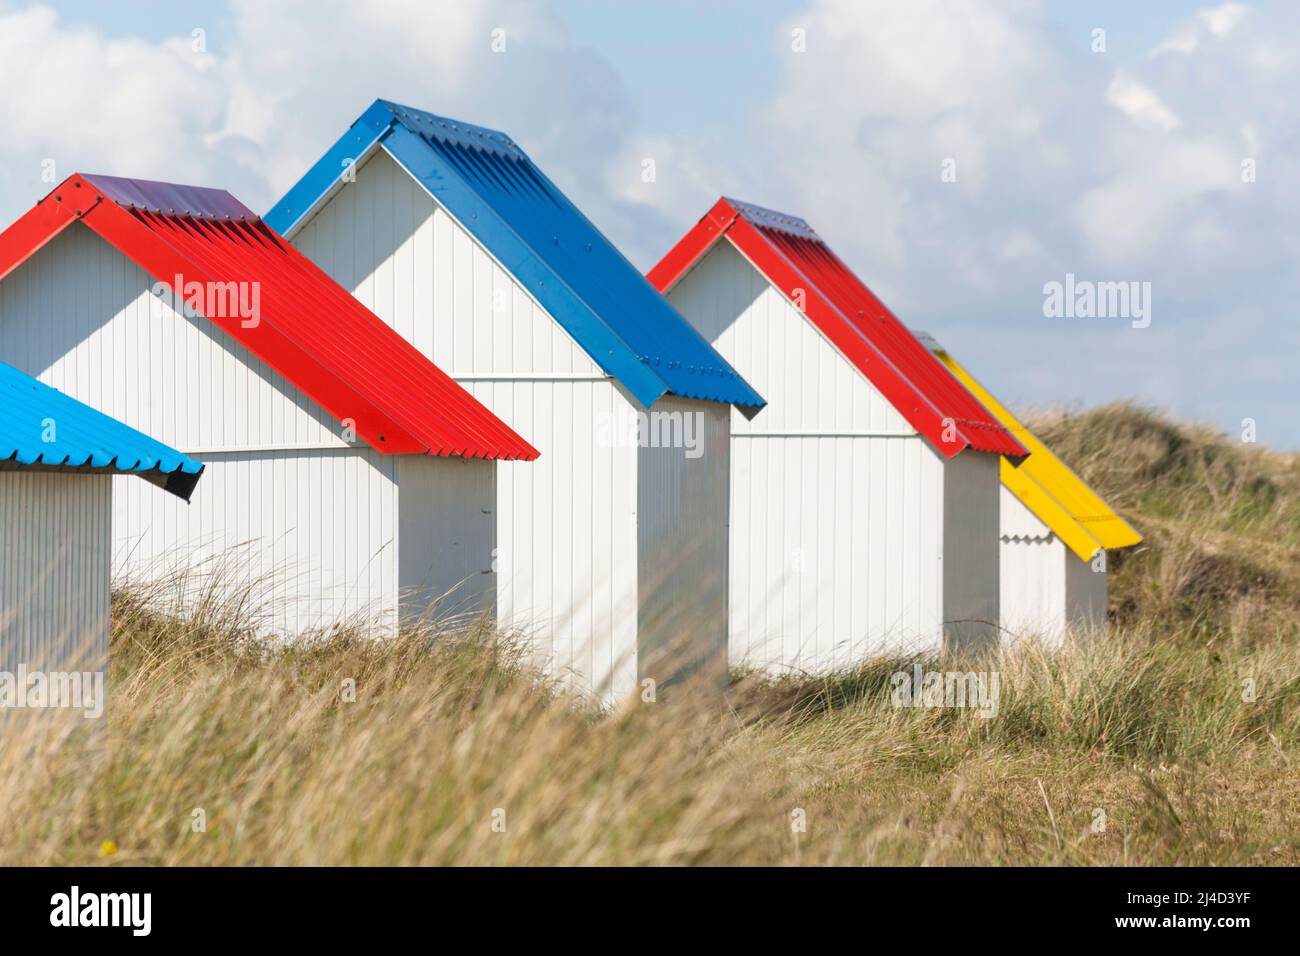 Cabanes de plage aux toits colorés et vibrants de Gouville-sur-mer, presqu'île du Cotentin, Normandie, France Banque D'Images